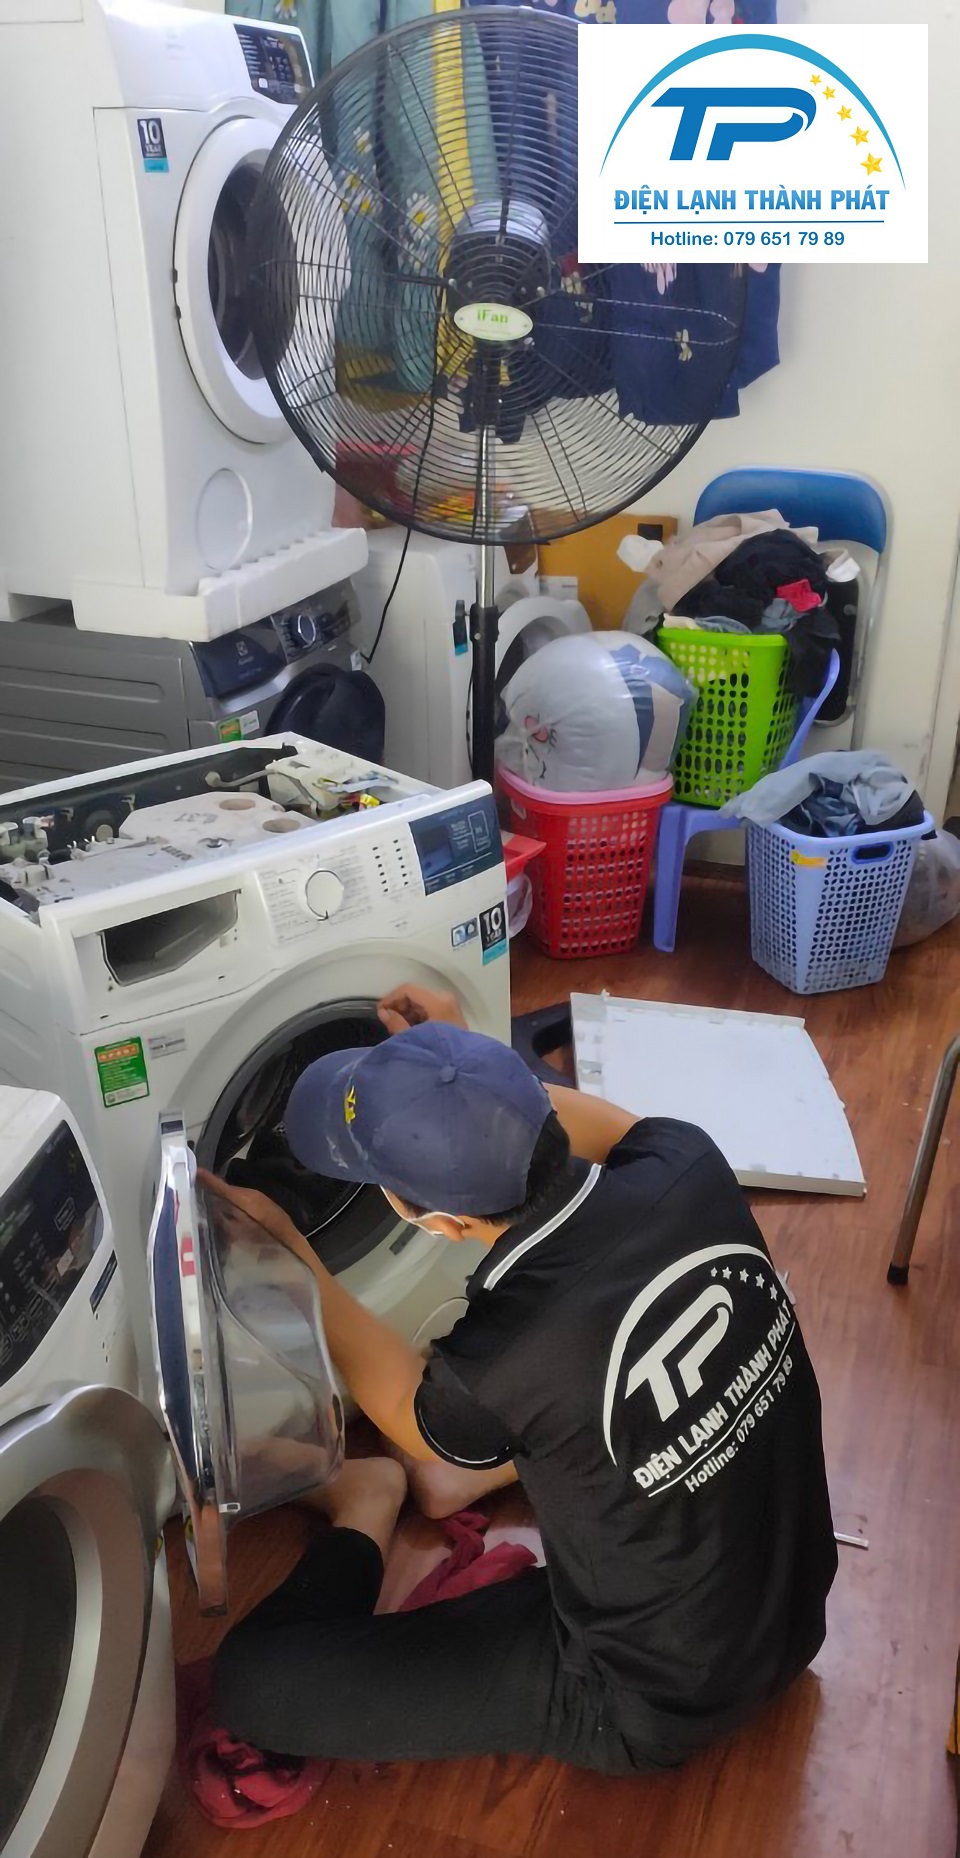 Kỹ thuật viên sẽ có mặt tận nơi khách hàng yêu cầu để tiến hành sửa máy giặt Quận 1 Thành Phát.